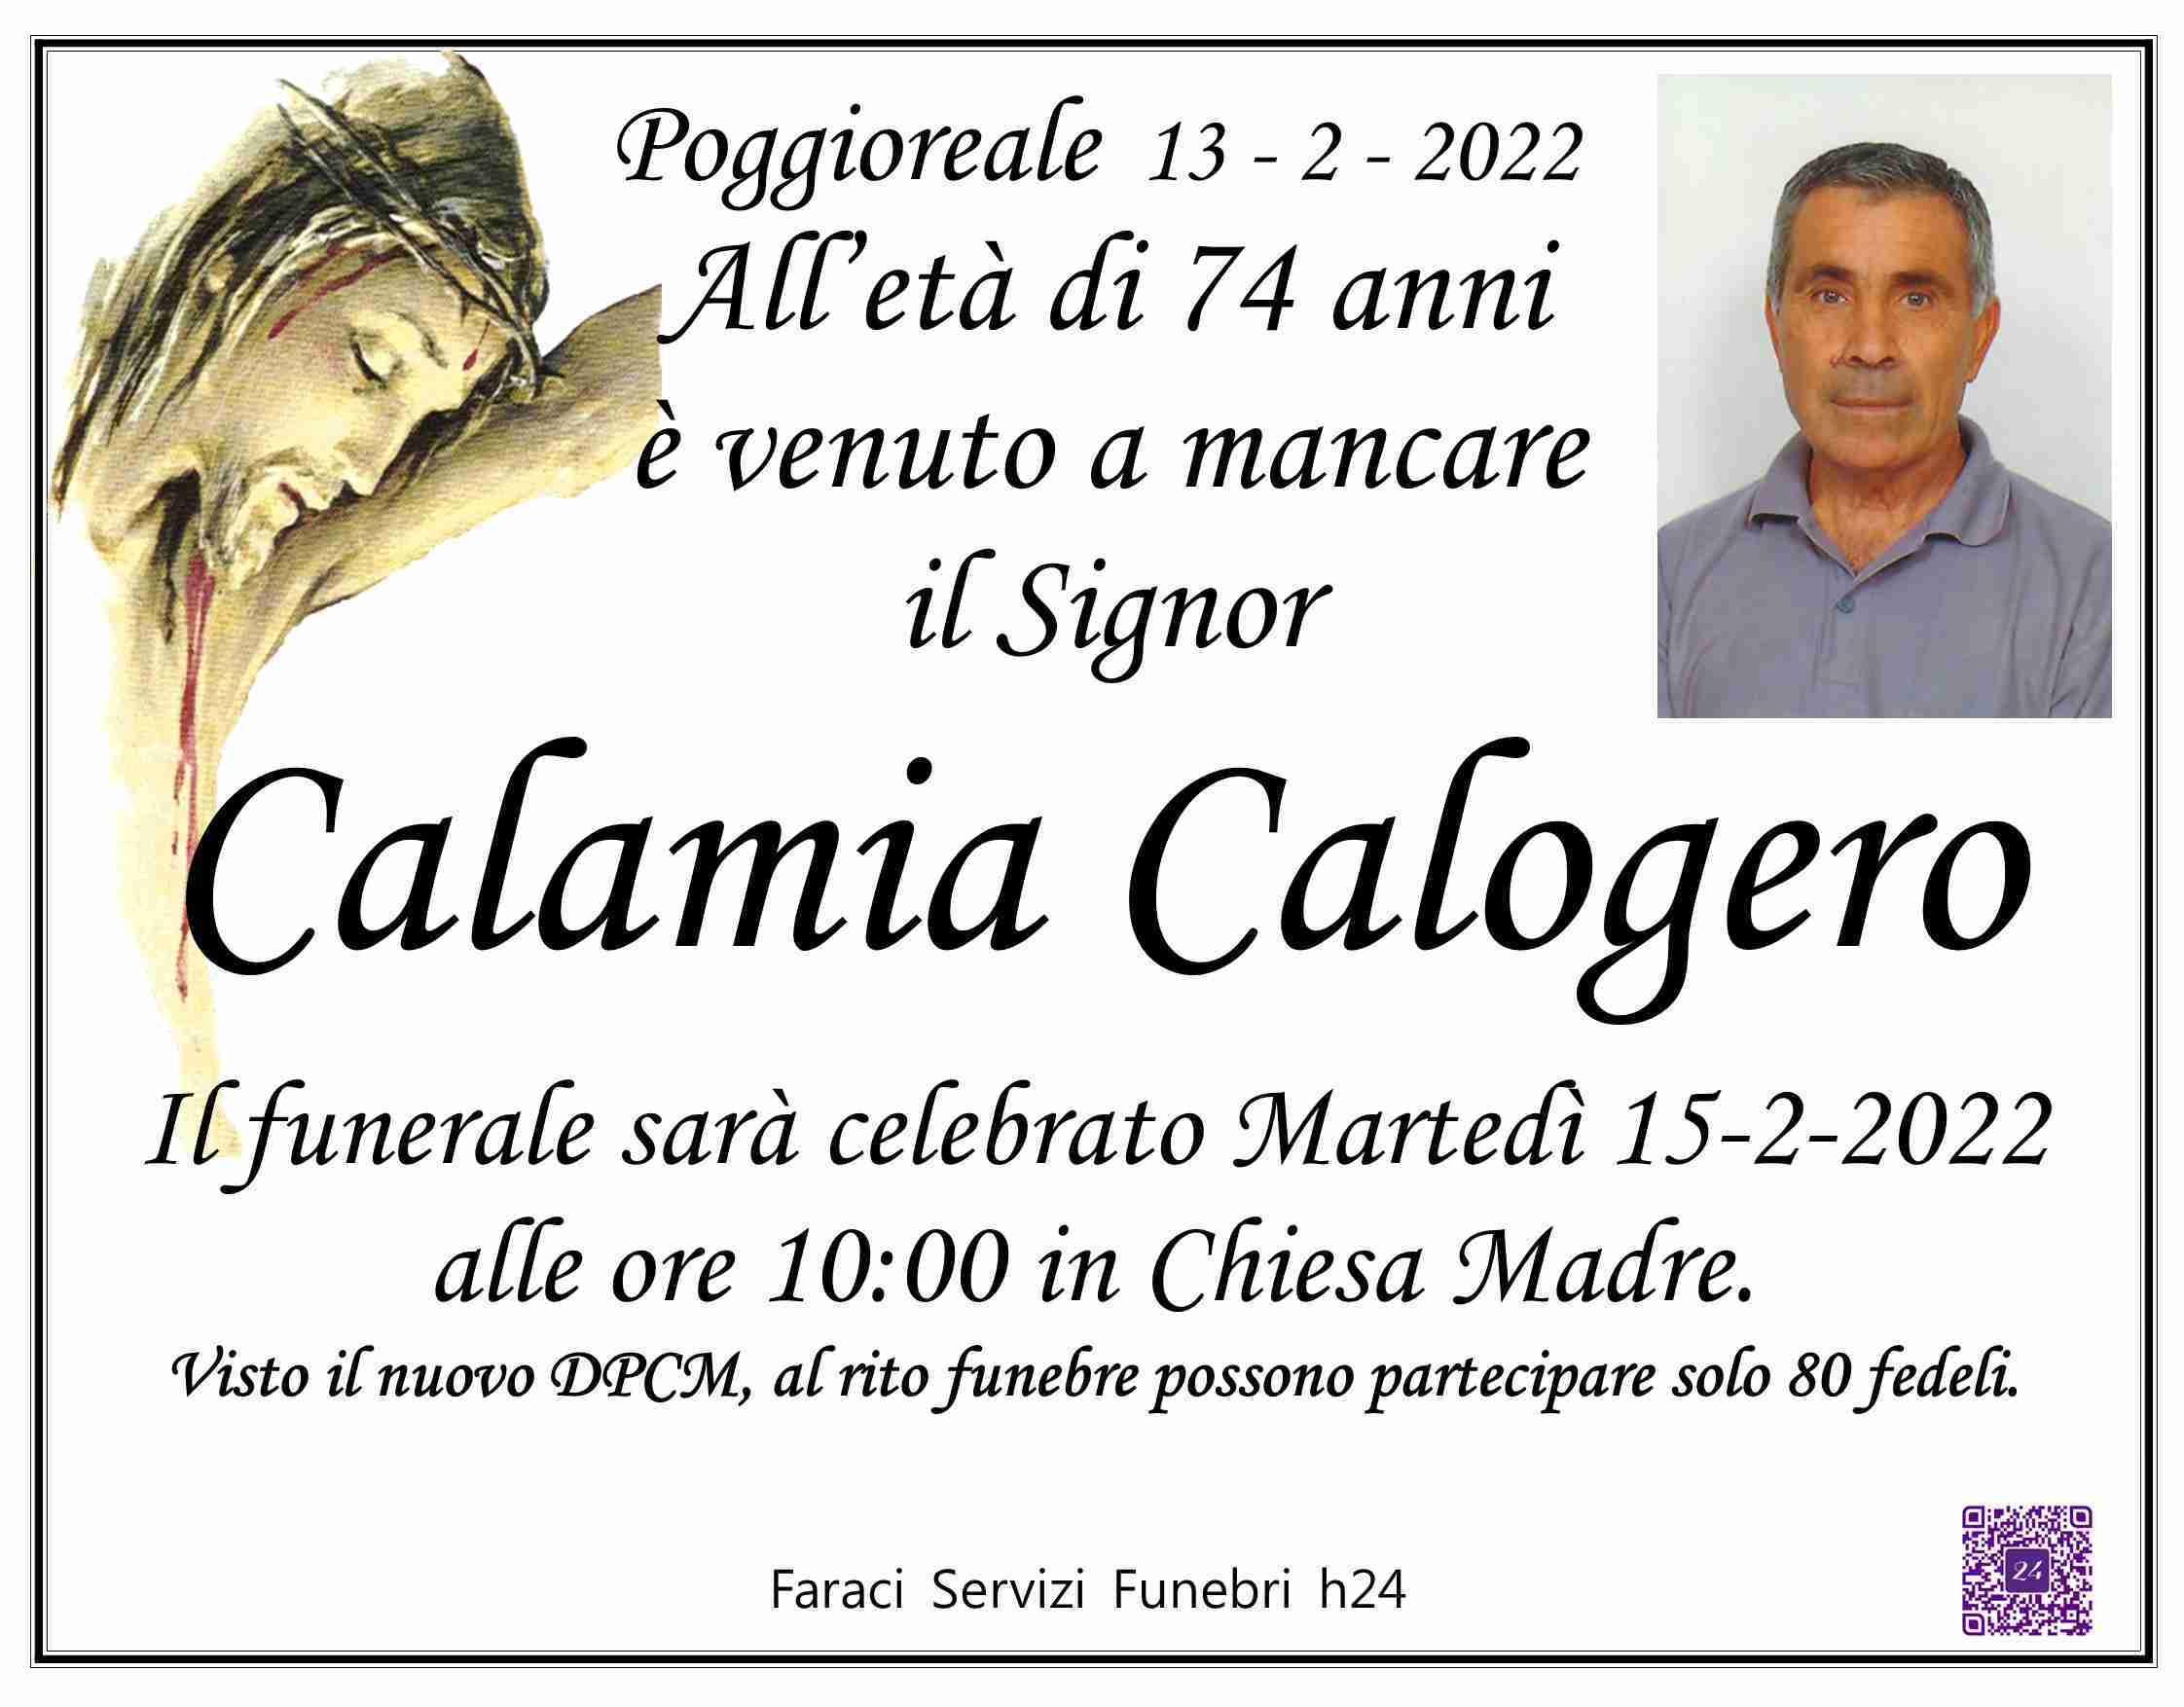 Calogero Calamia